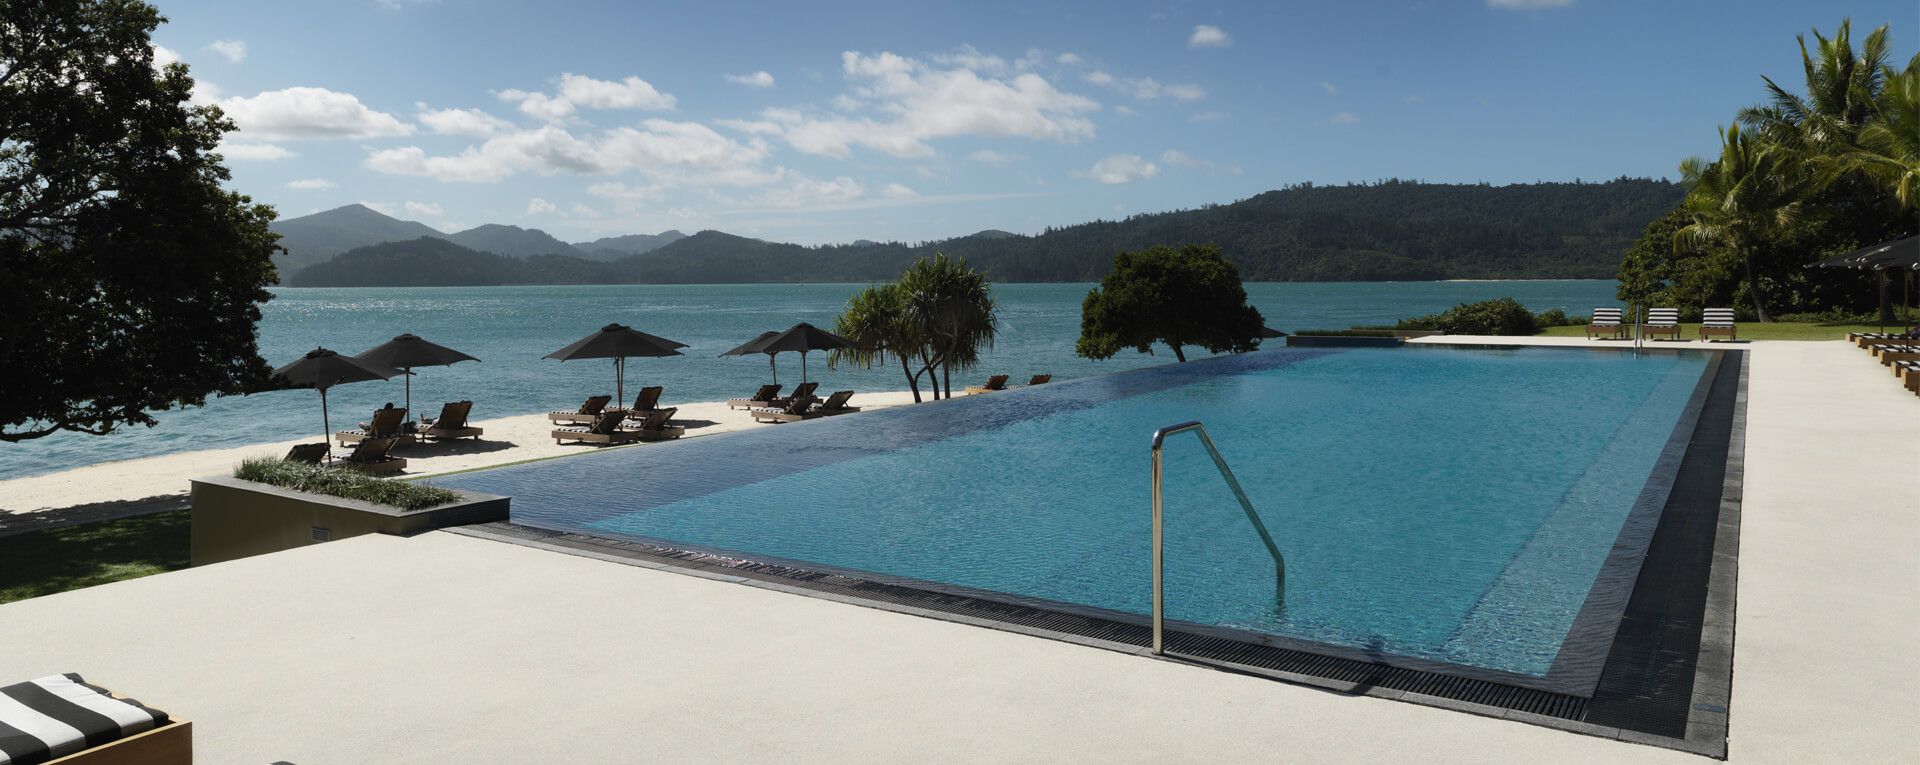 Qualia - Australia Luxury Resort